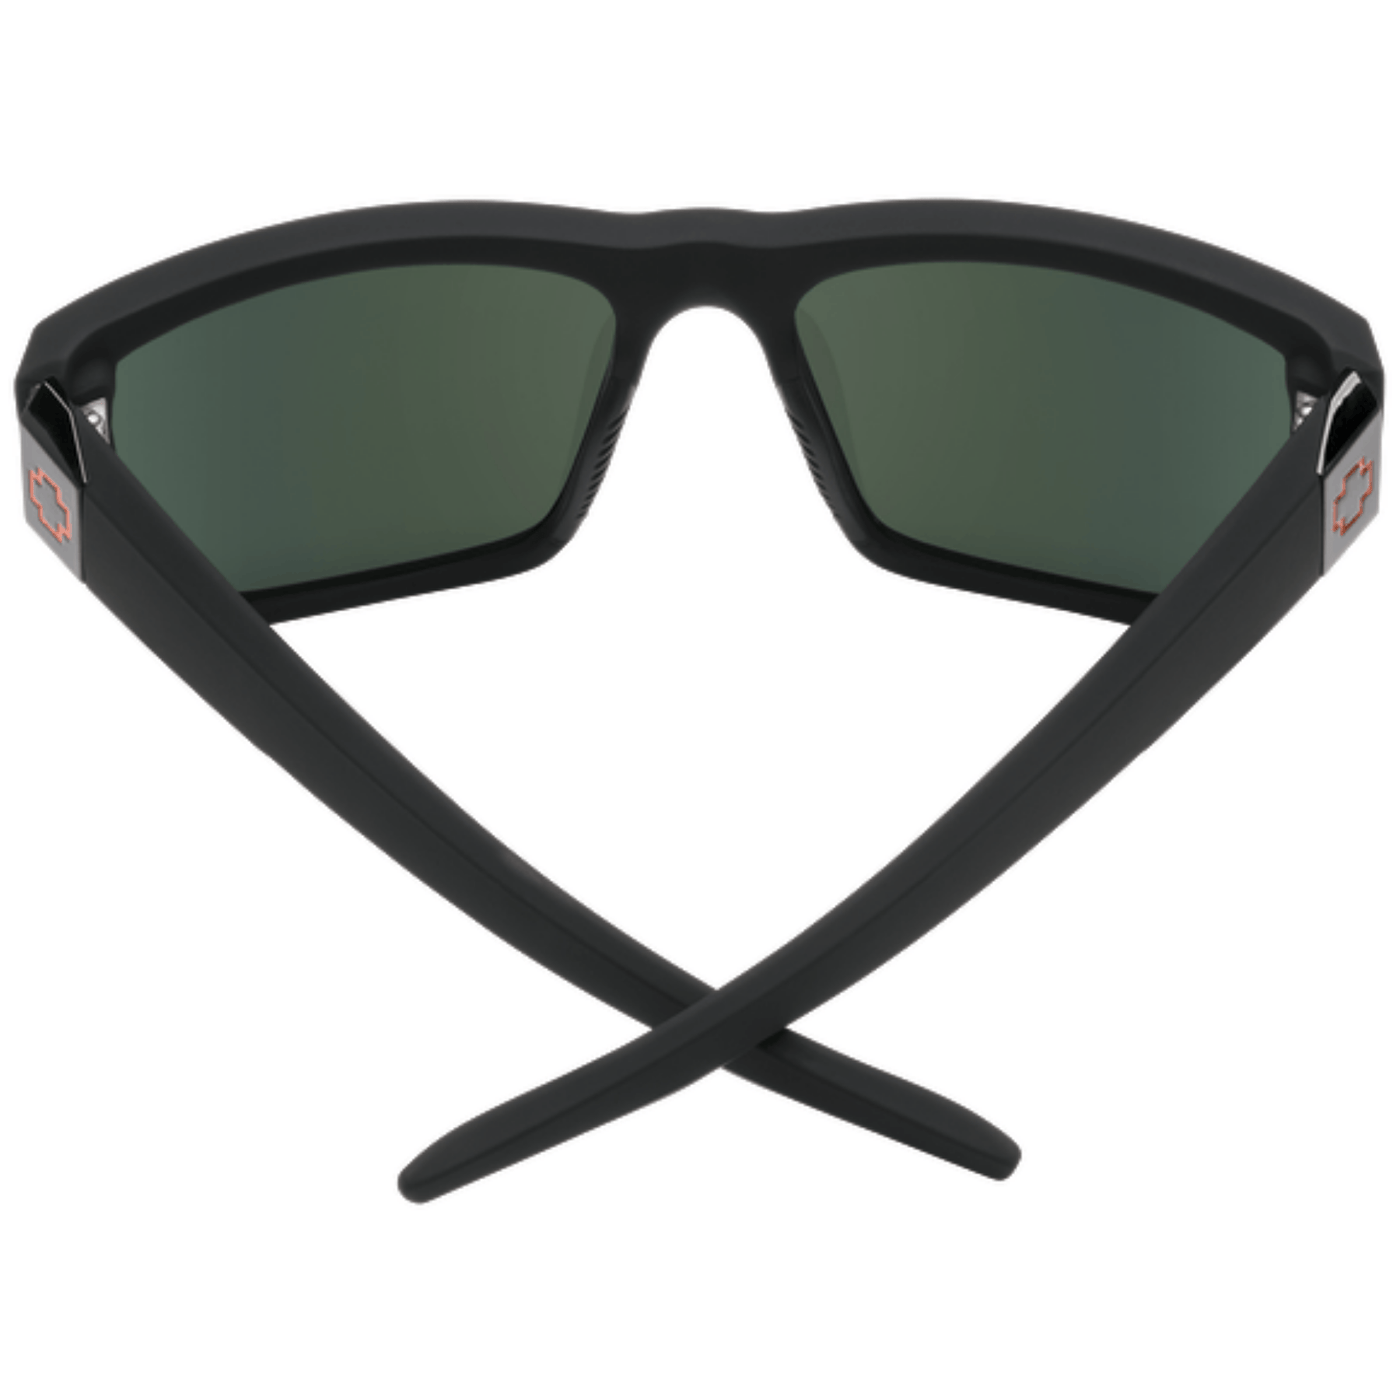 sunglasses for beach lifeguards